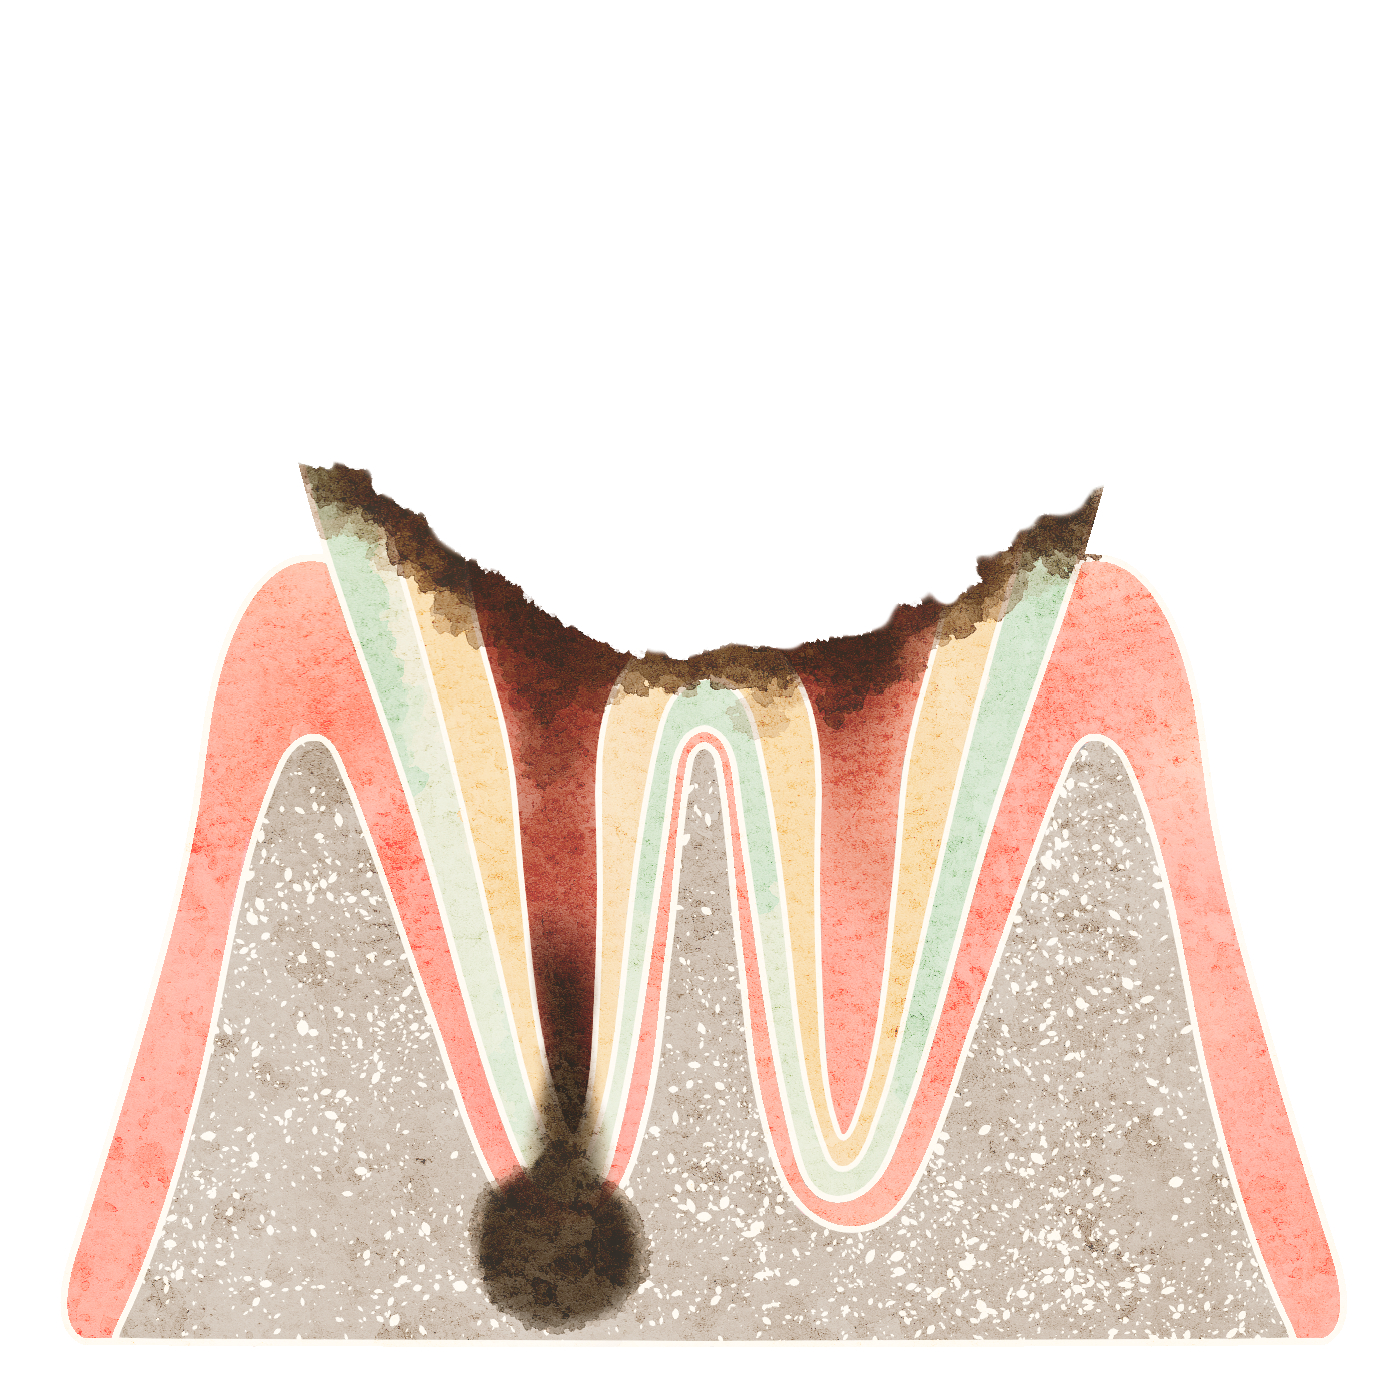 歯の根のばい菌感染について